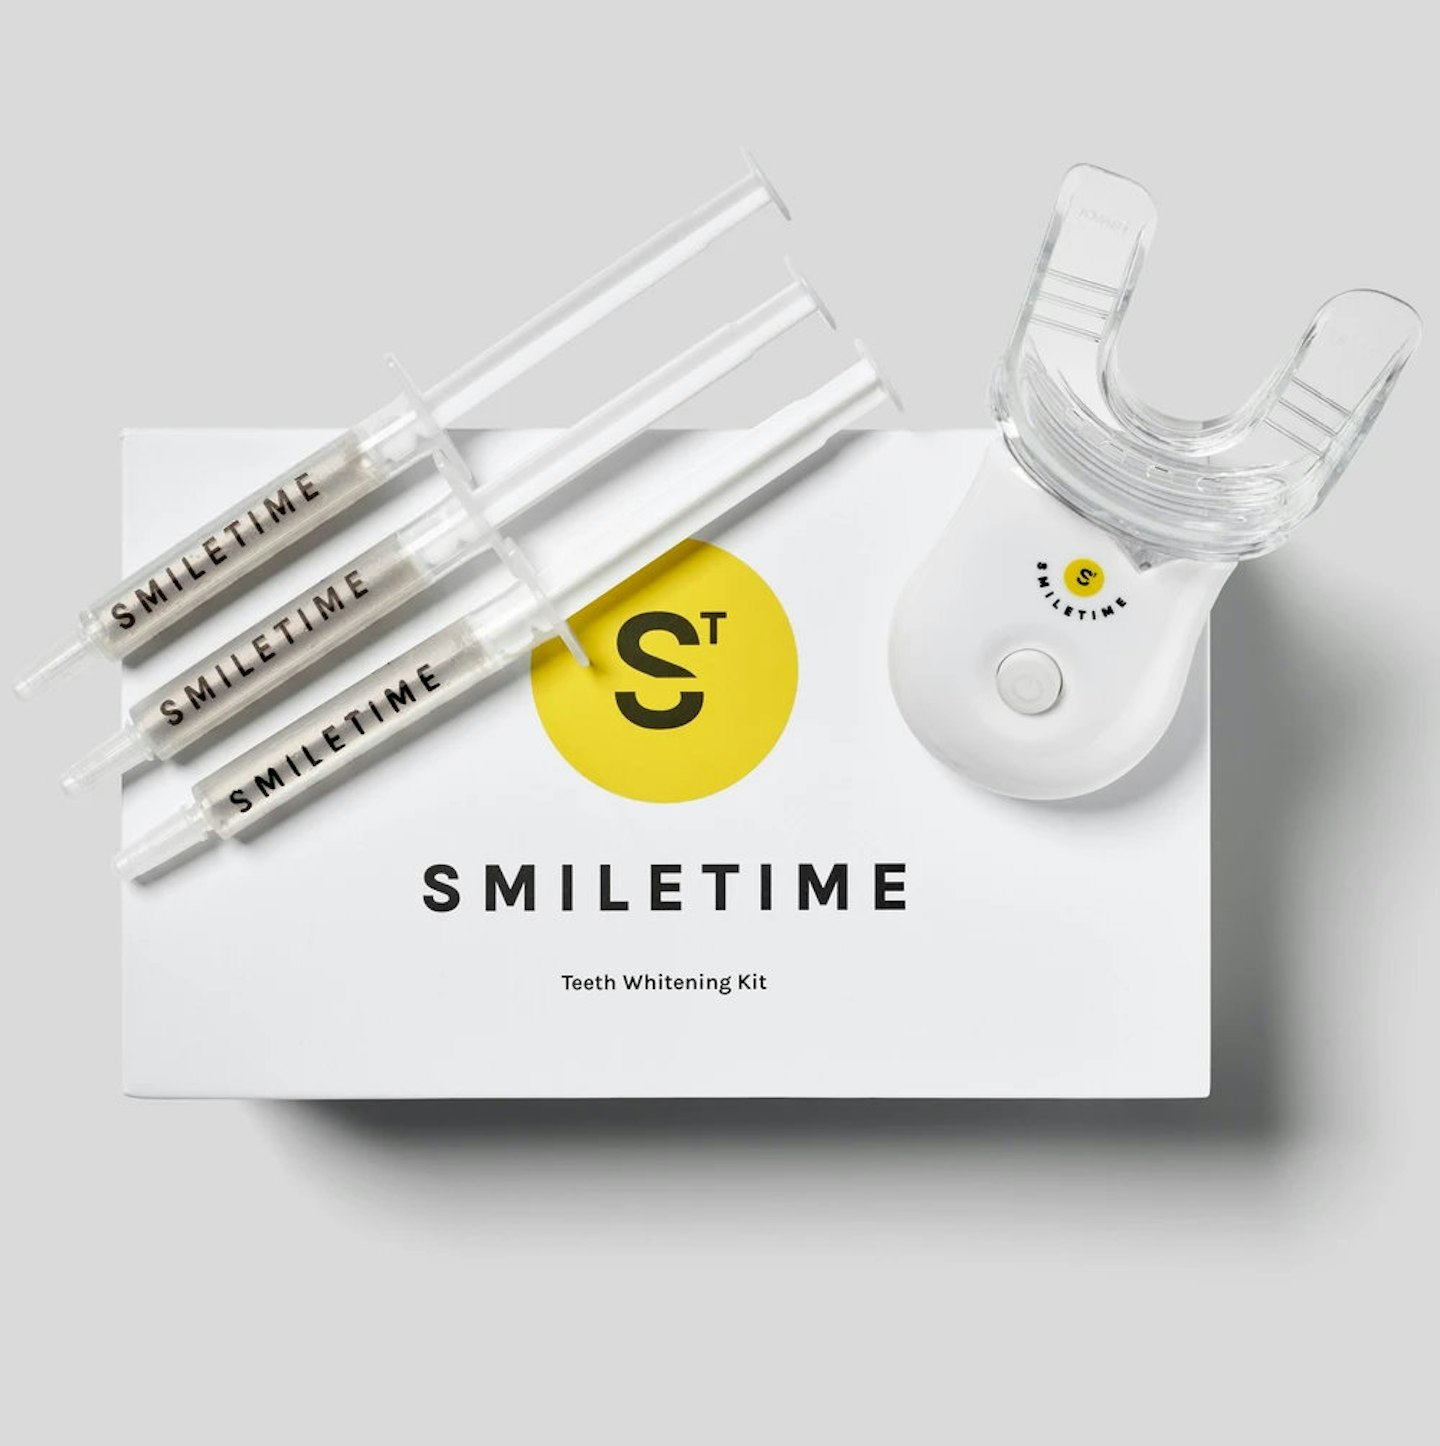 Smile time teeth whitening kit